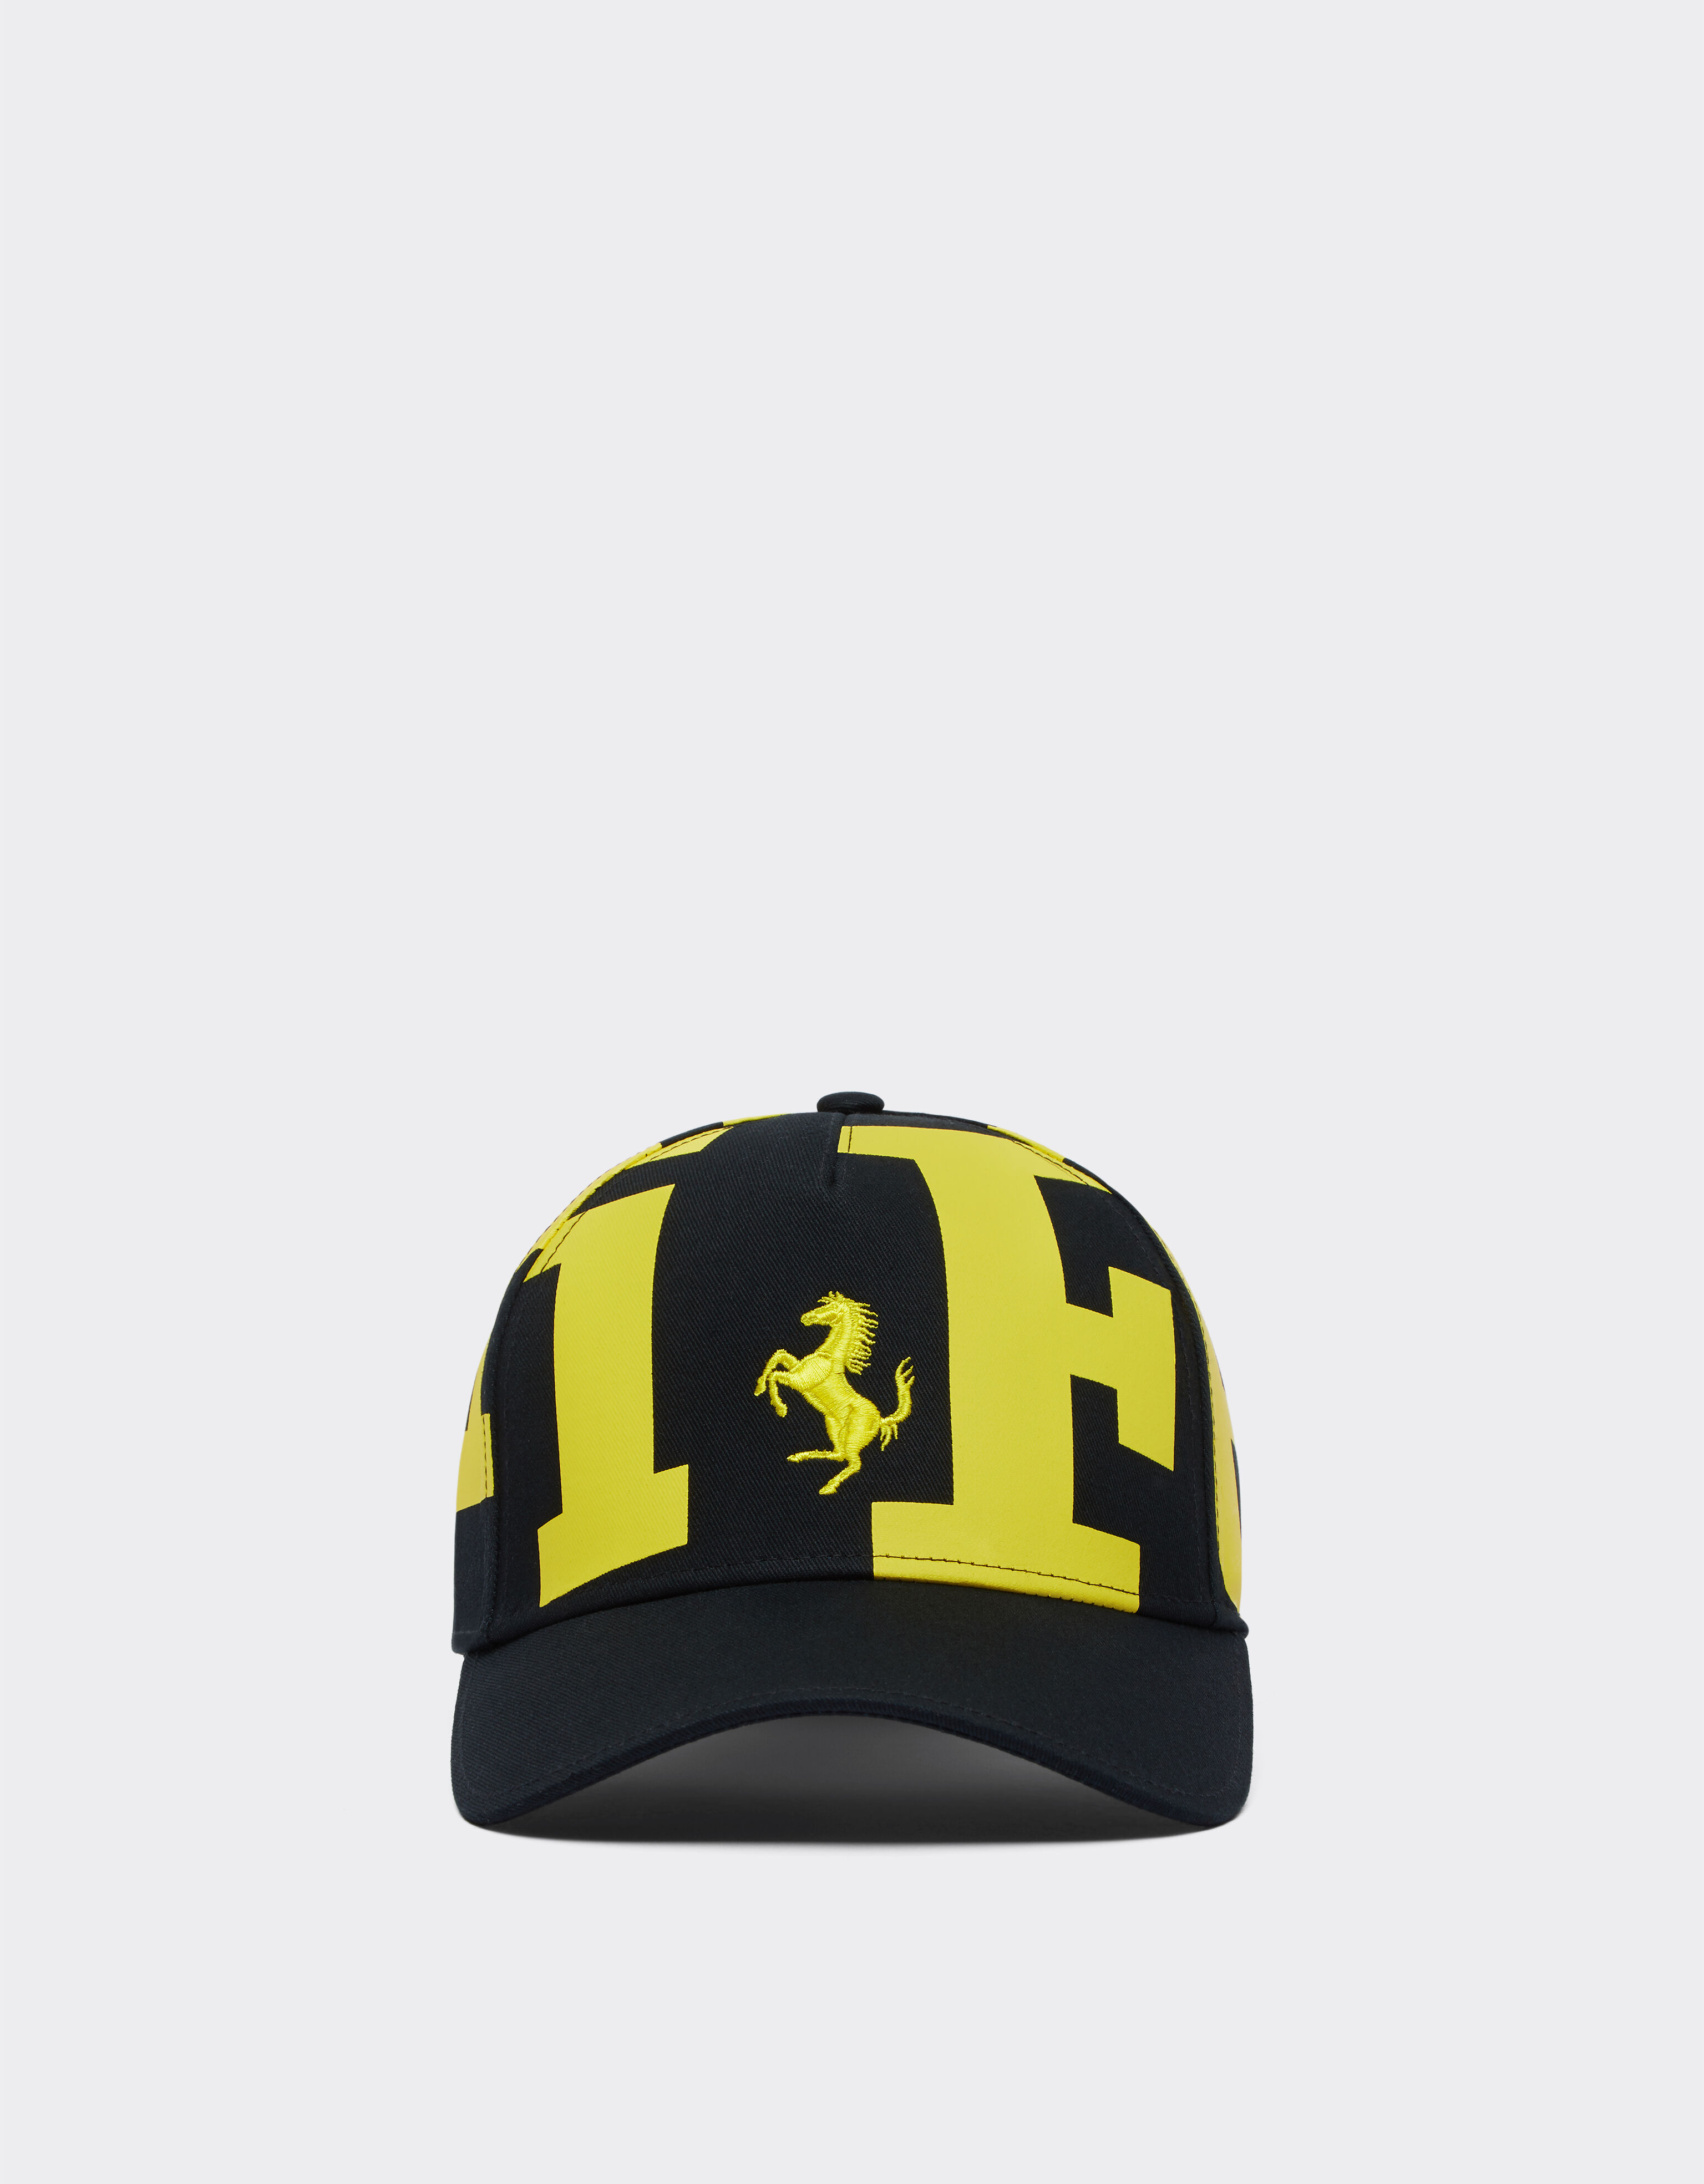 Ferrari Children’s cap with Ferrari logo 黑色 47096fK